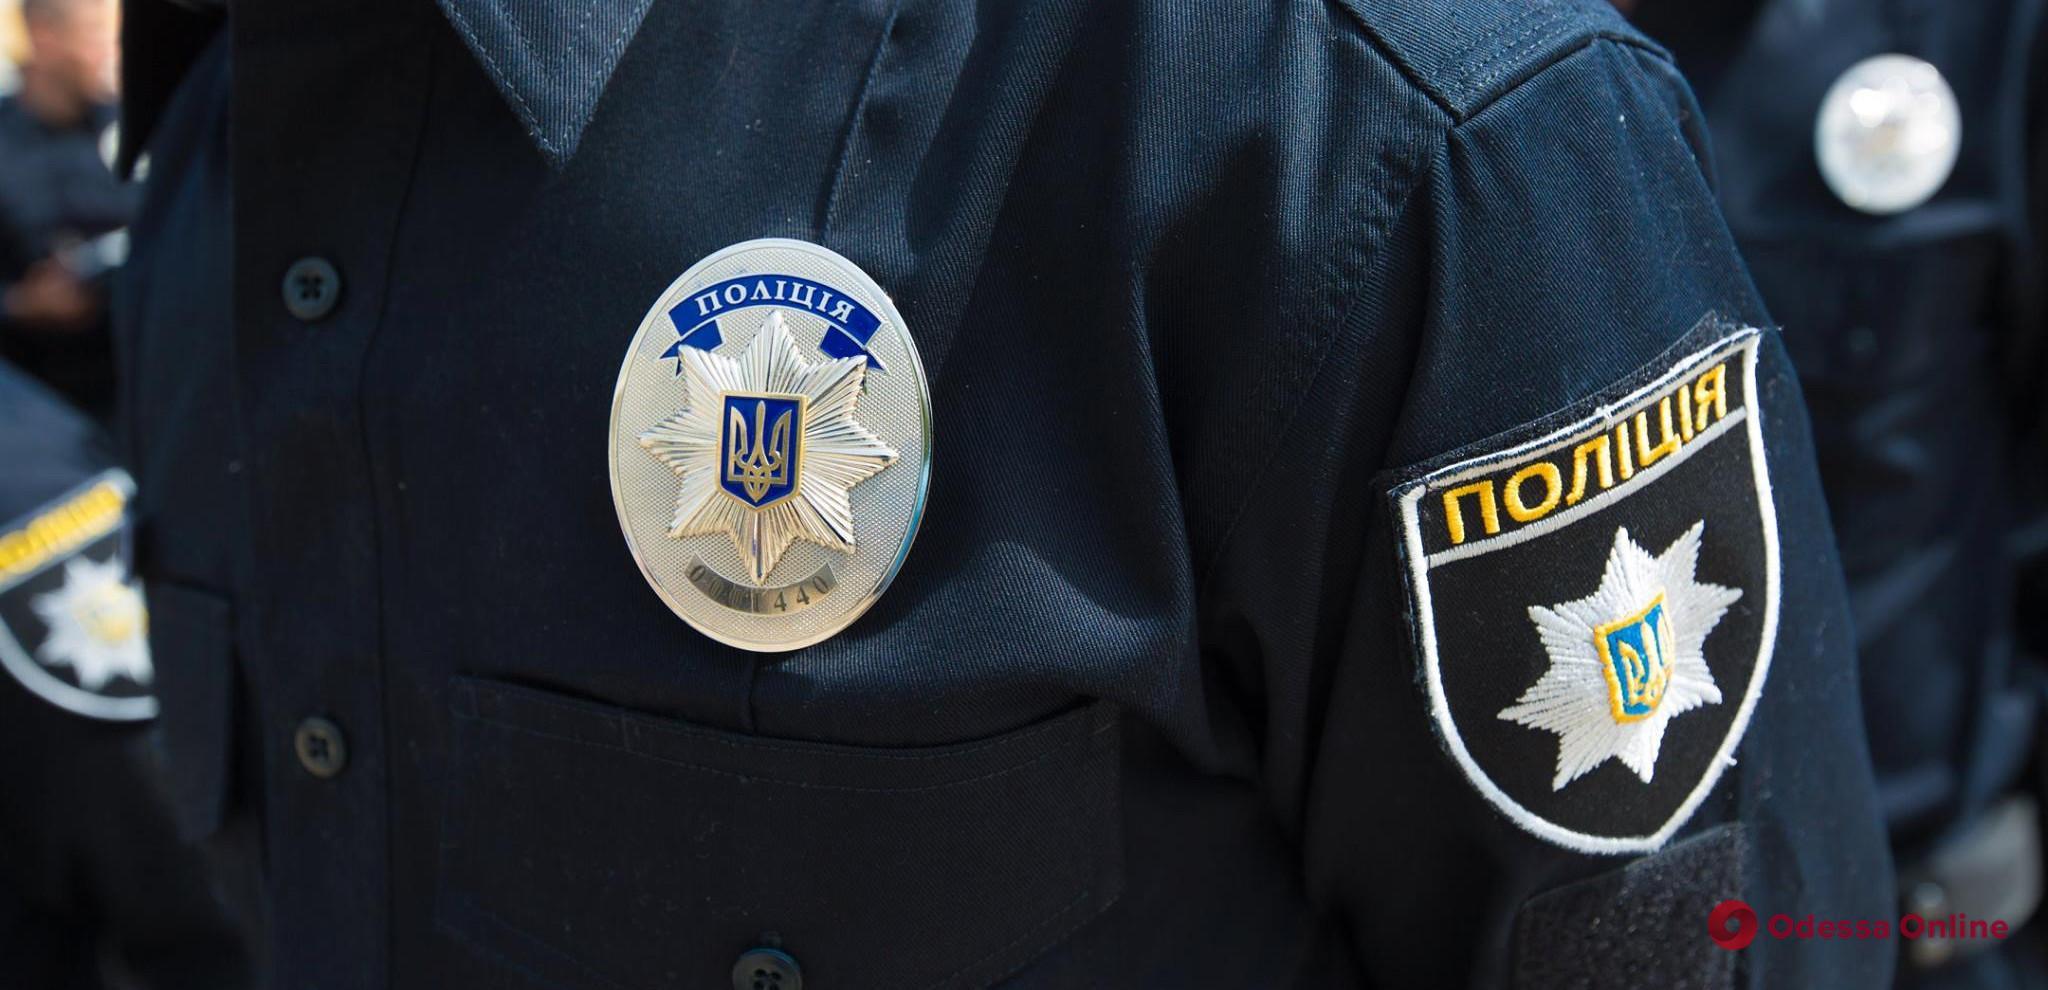 Про підозру повідомили дівчатам та хлопцю, які накинулася на перехожих в центрі Одеси — серед нападників є неповнолітні